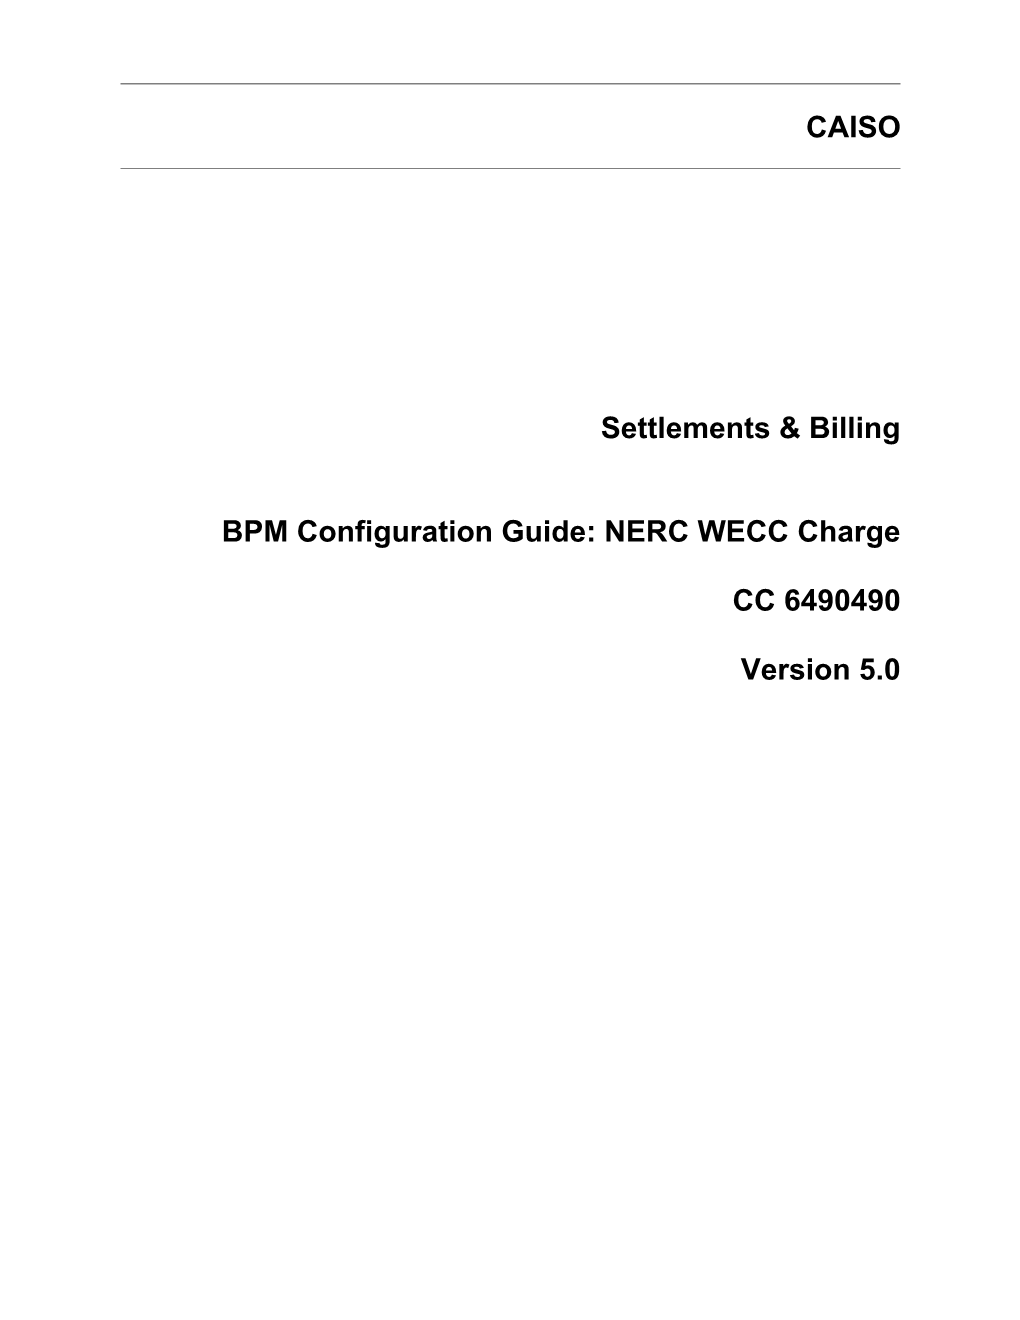 NERC WECC Charge